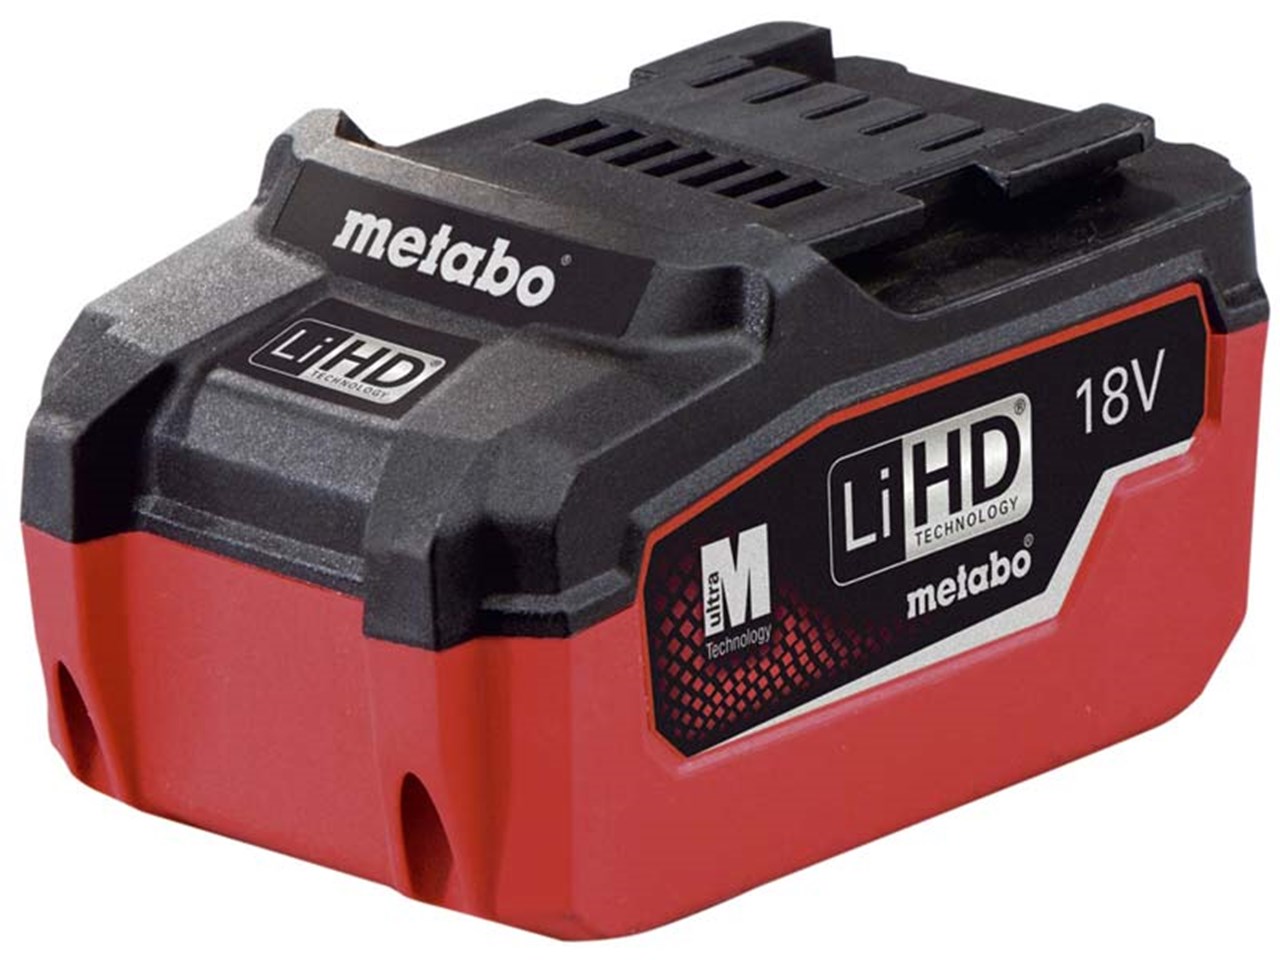 Metabo 625342000 18v 5.5Ah LiHD Battery Pack